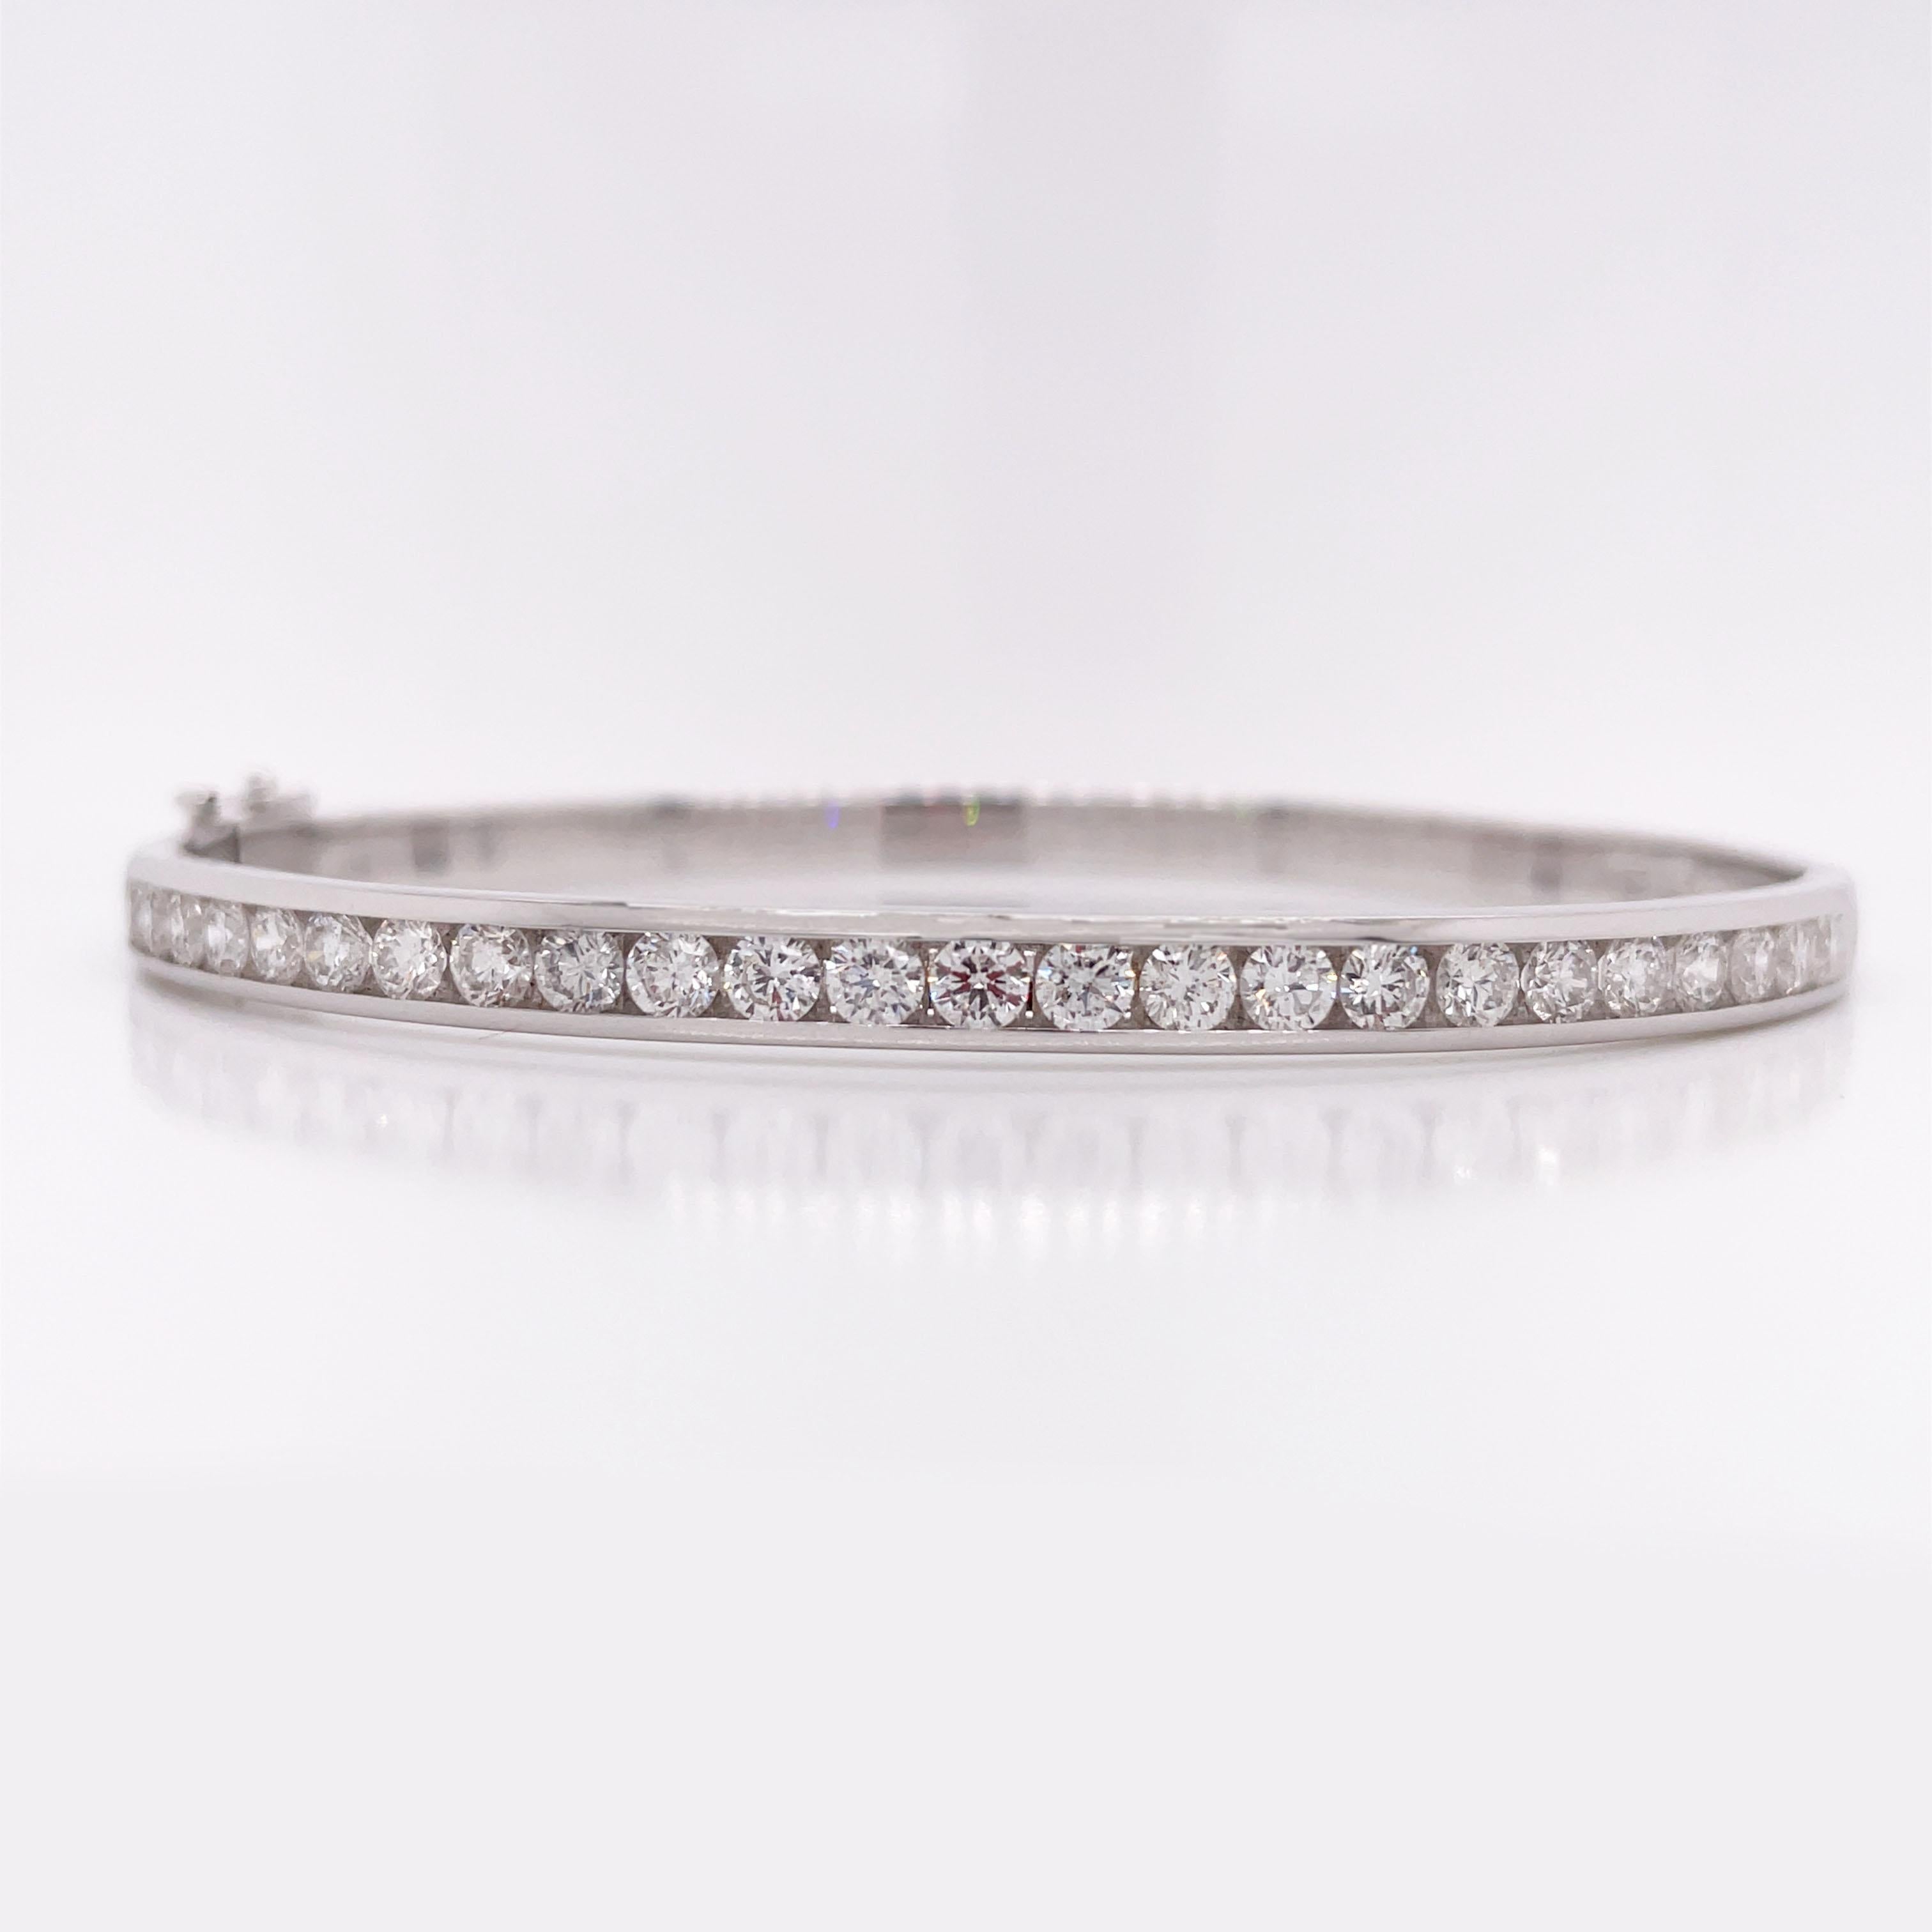 Ce magnifique bracelet est réalisé en or blanc 14k et la moitié du bracelet est sertie de 25 pierres de couleur G/H Si1.  diamants. Le design en demi diamant évite les rayures et l'usure au fil du temps, ce qui le rend parfait pour un usage